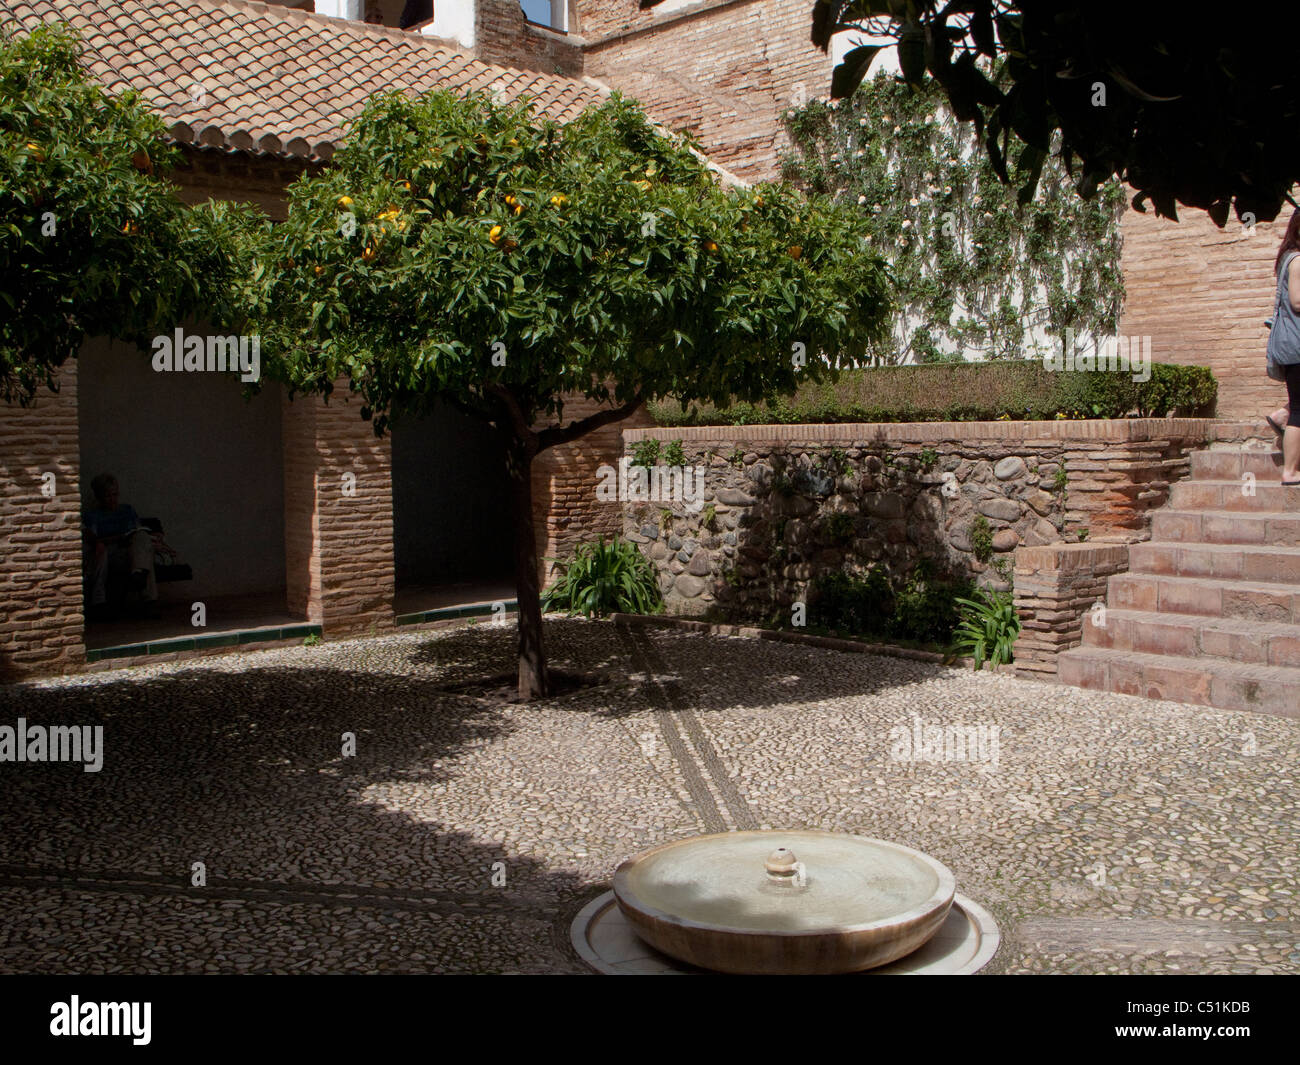 Granada Spagna Alhambra Palace Generalife patio con giardino cortile arancio Foto Stock